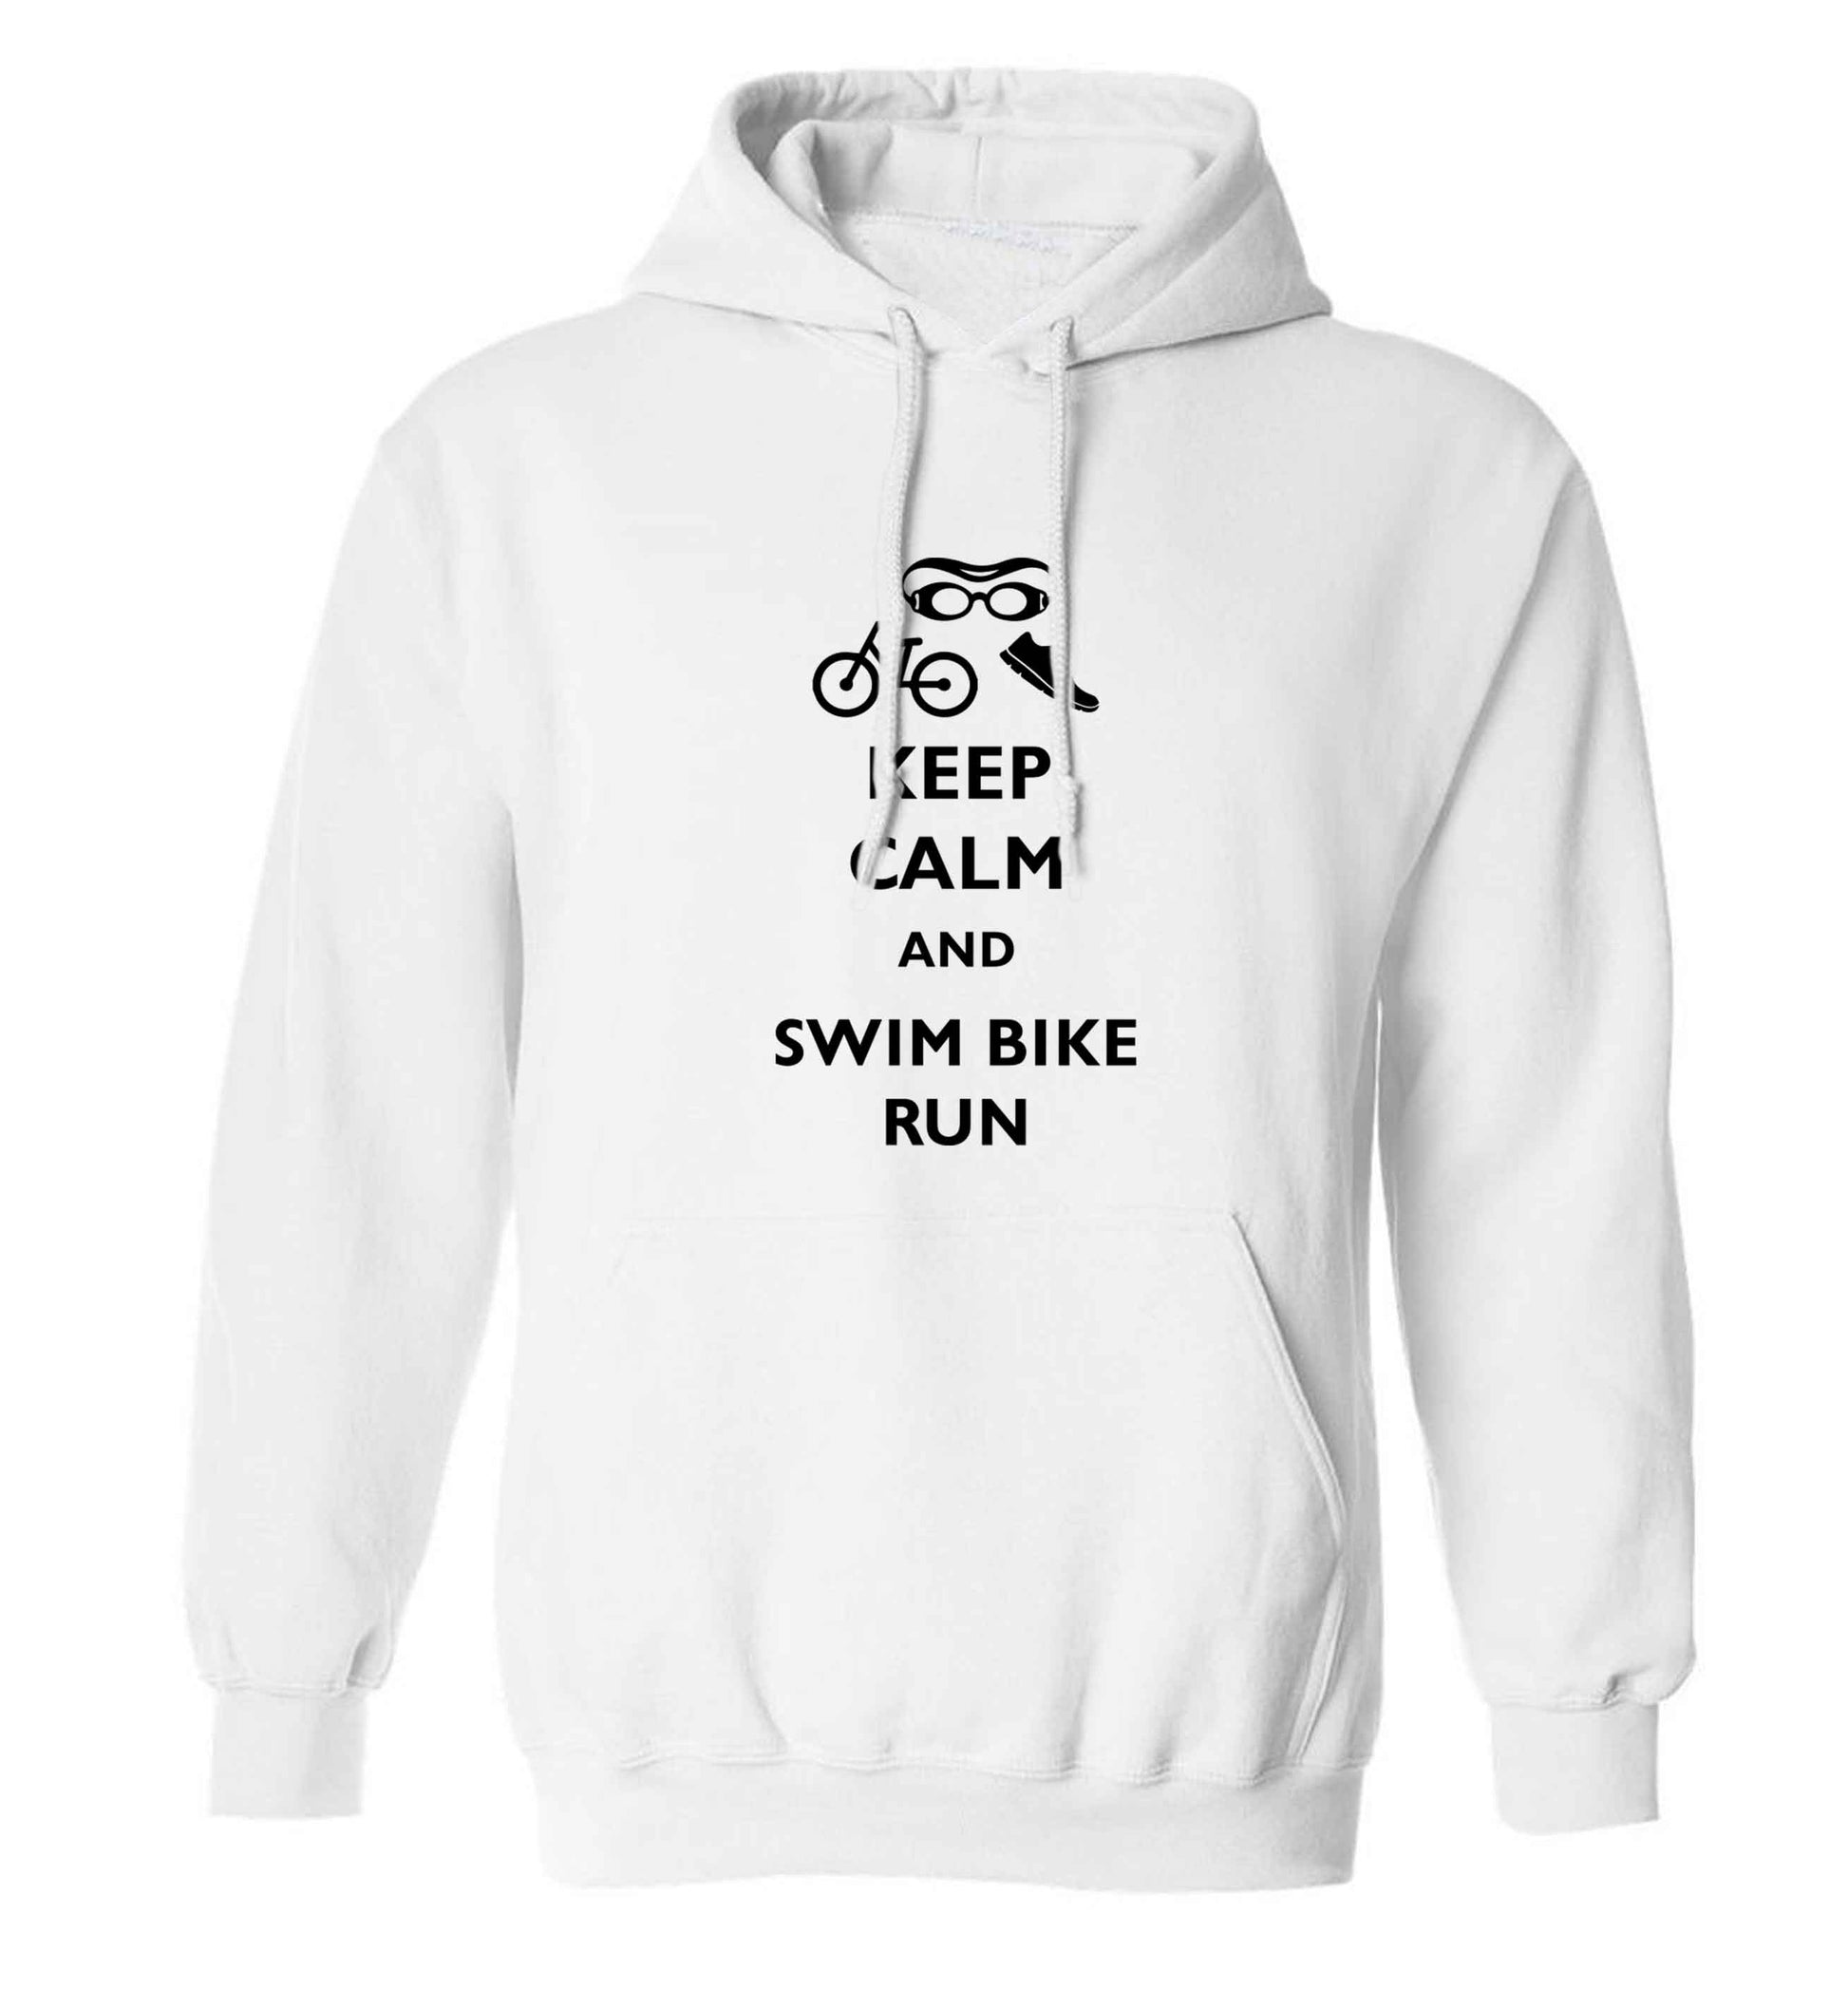 Keep calm and swim bike run adults unisex white hoodie 2XL